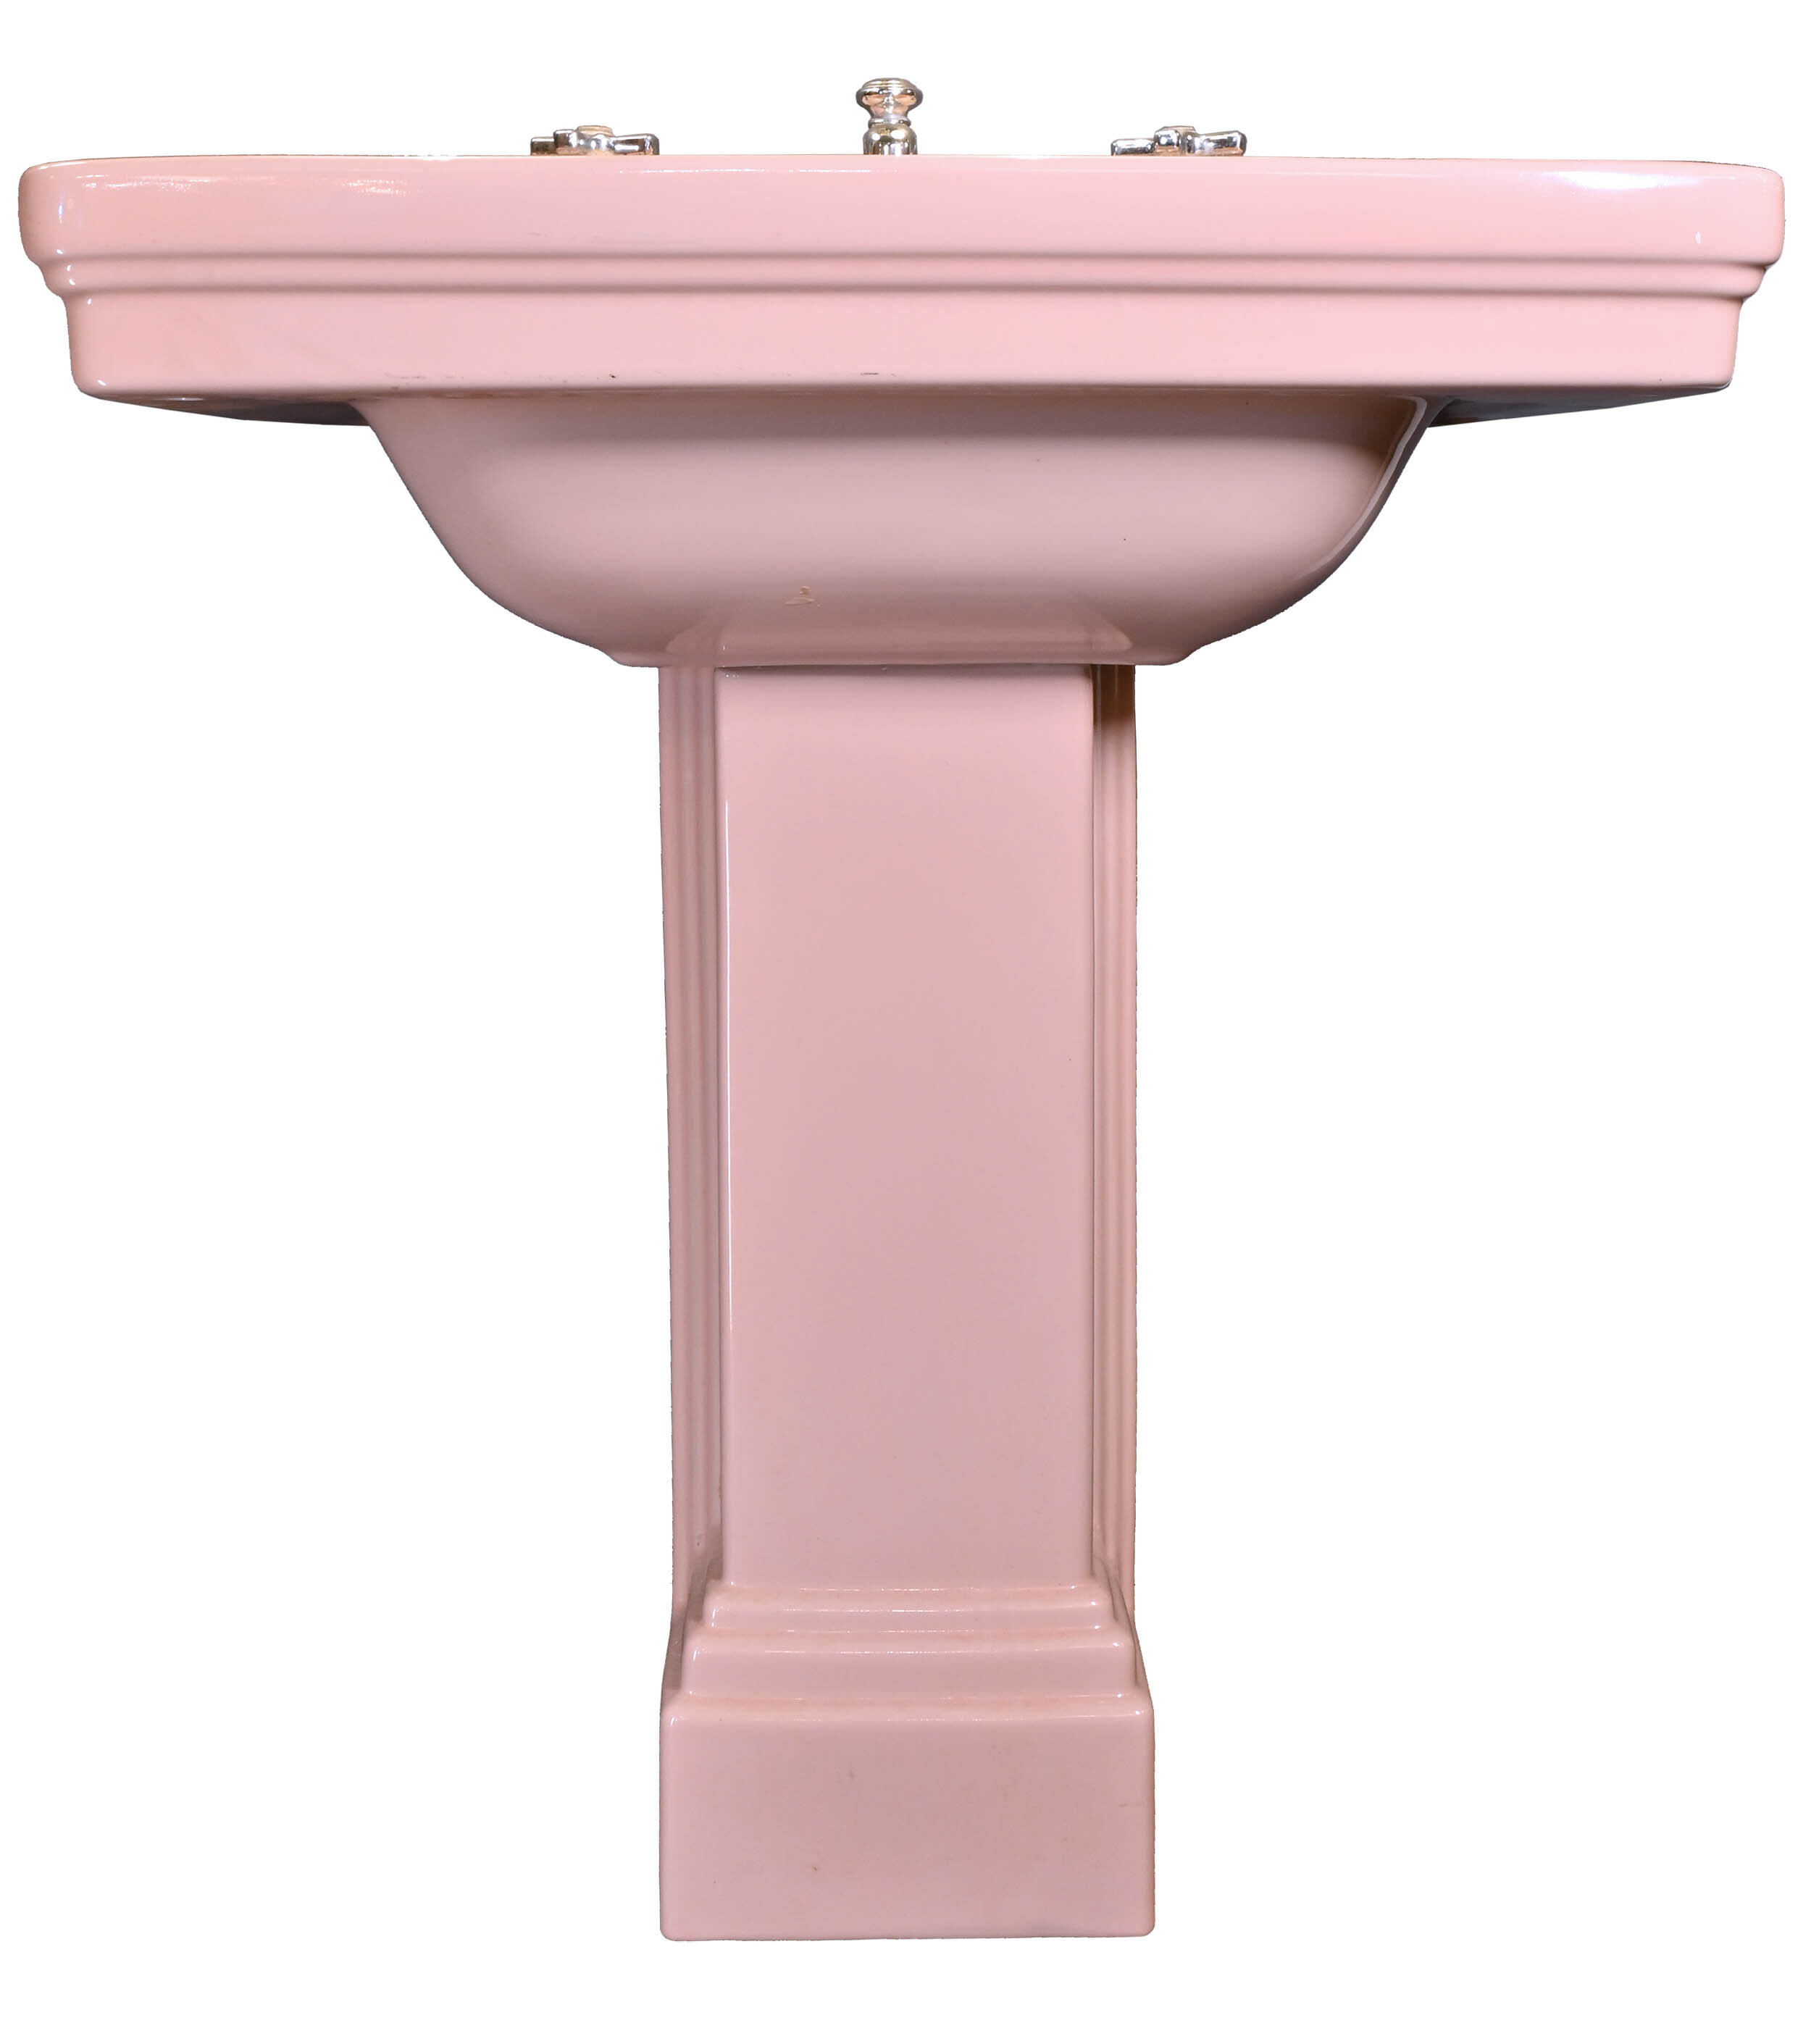 New pink pedestal sink for sale Standard Pink Pedestal Sink Architectural Antiques